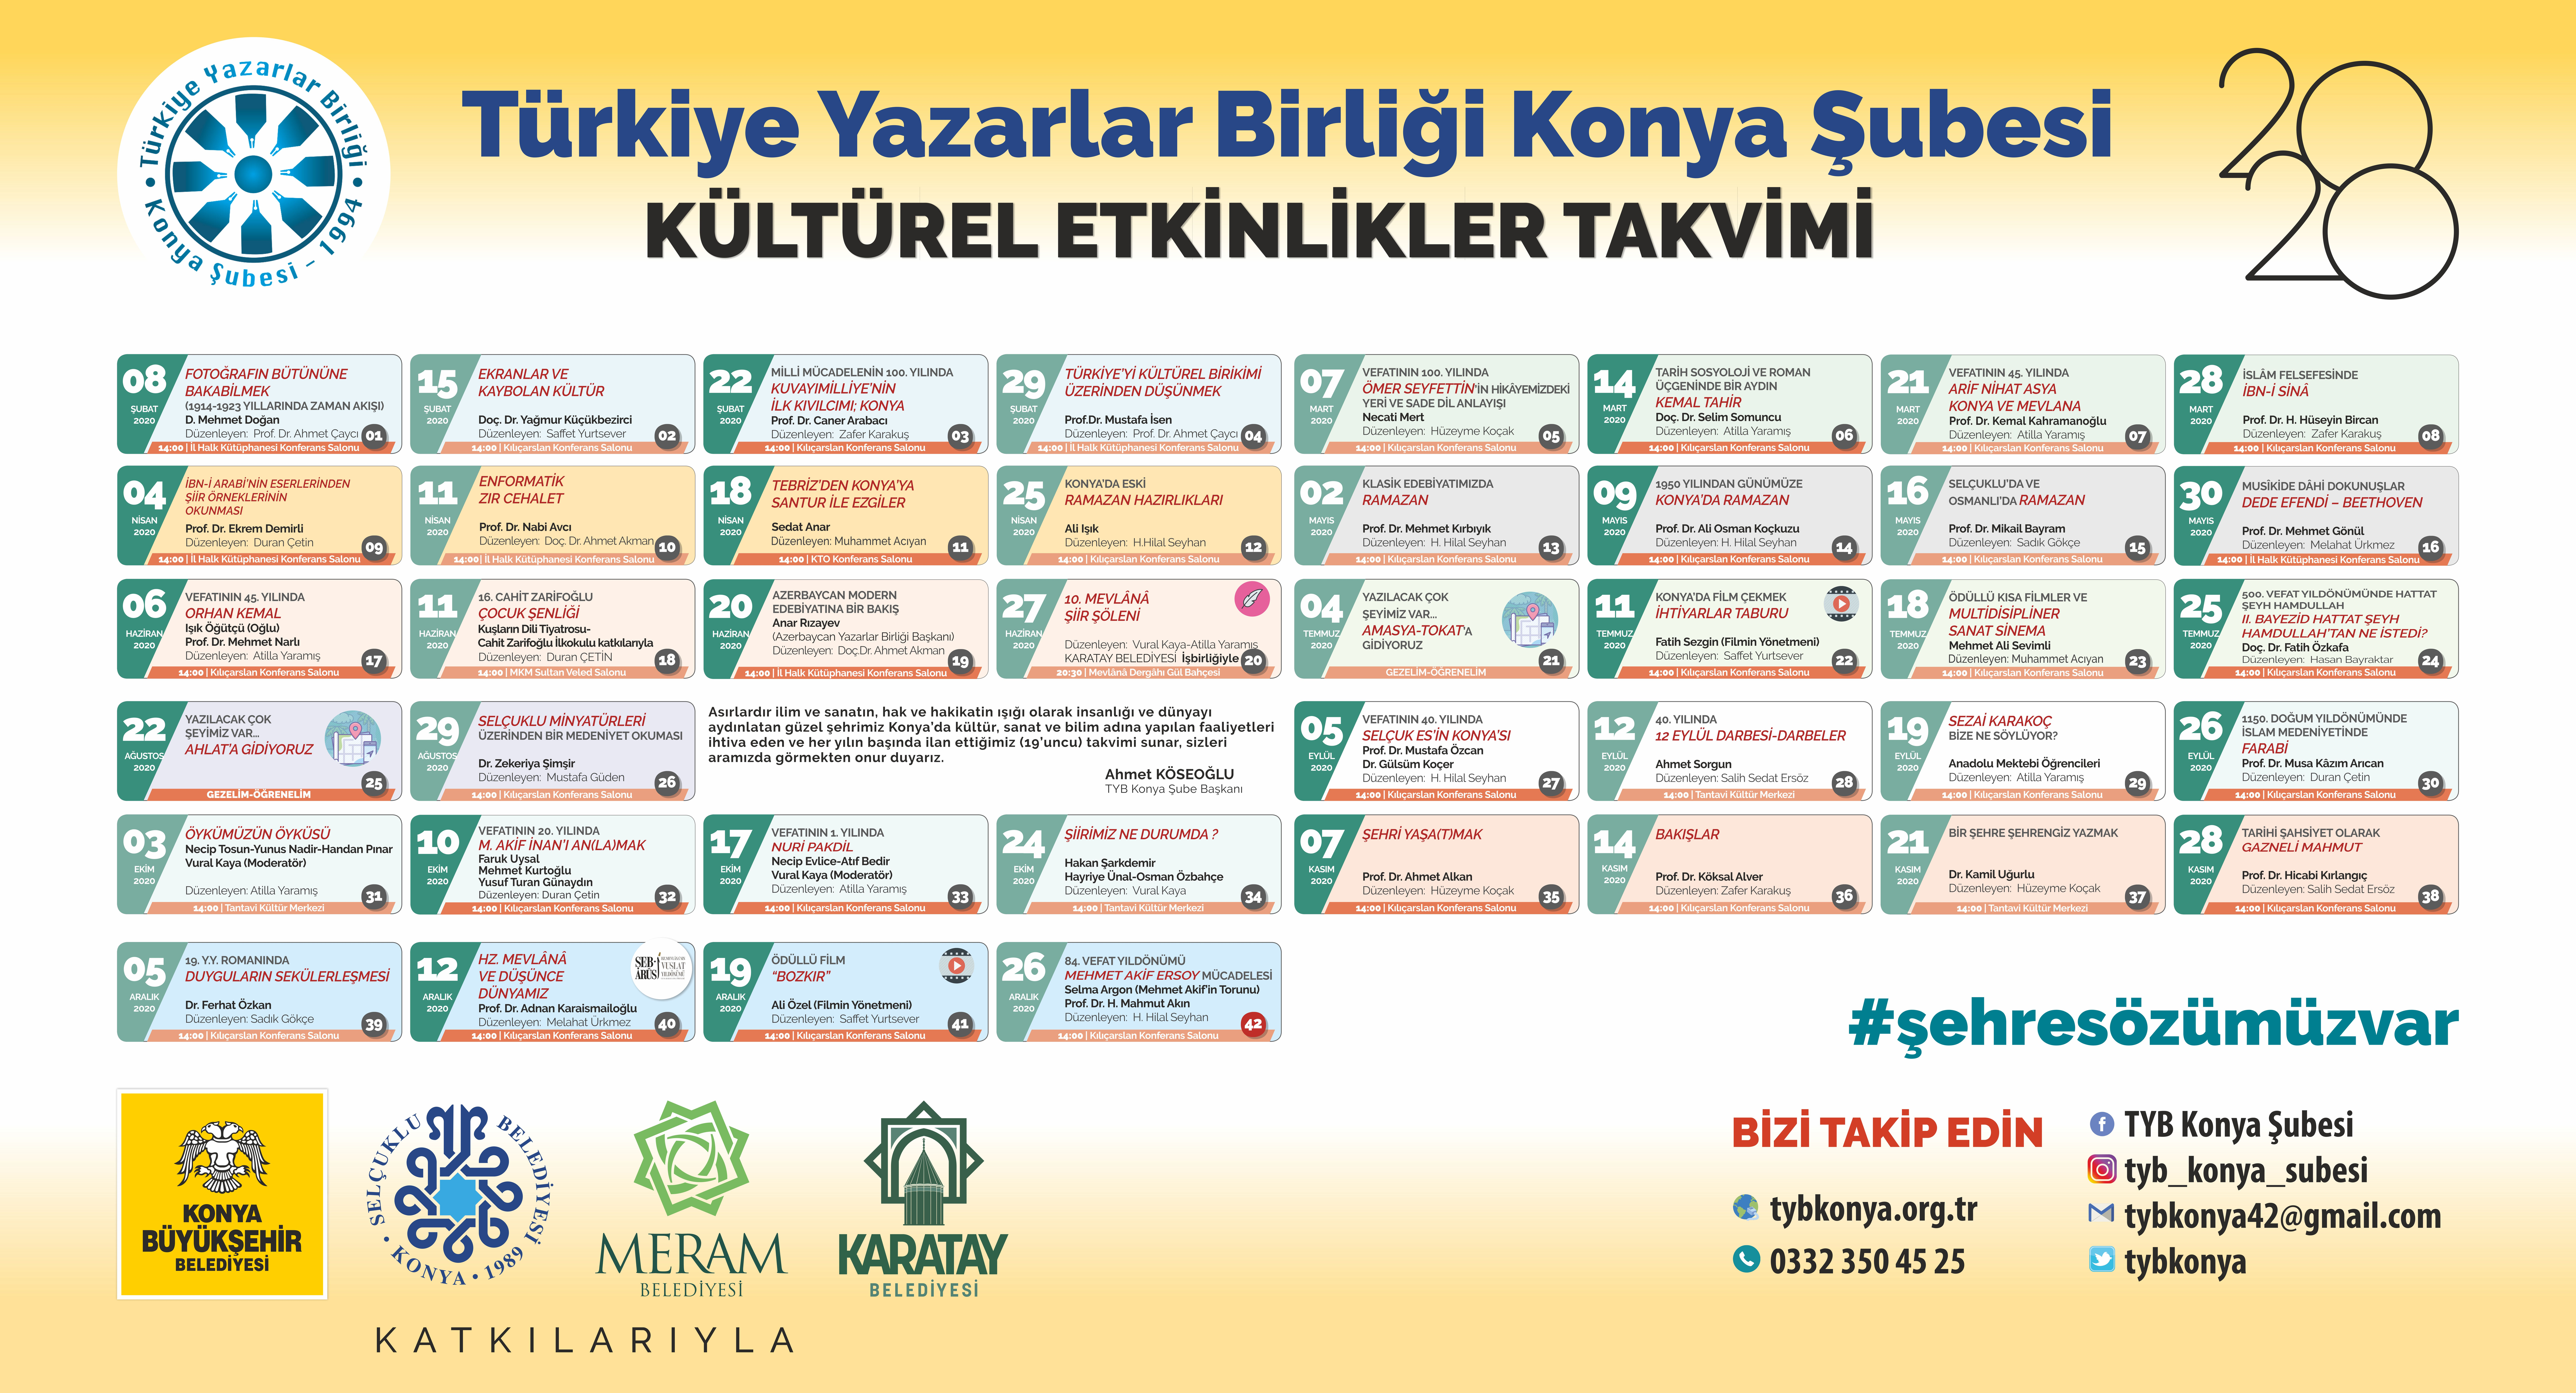 Türkiye Yazarlar Birliği Konya Şubesinin 2020 yılı kültürel etkinlikler takviminde zorunlu bazı tarih değişiklikleri olmuştur.